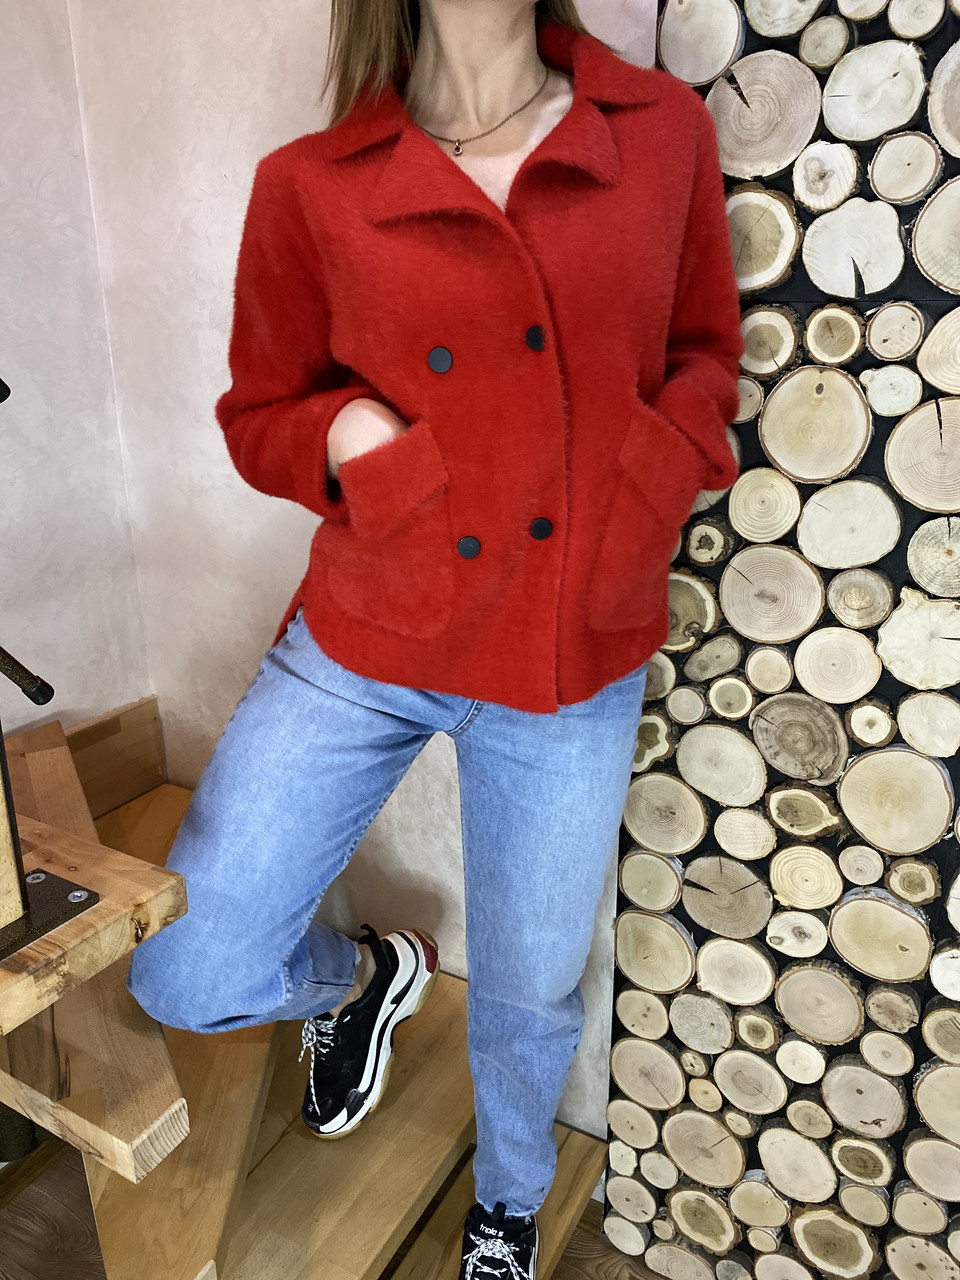 

Женский кардиган пиджак из альпаки короткий красный